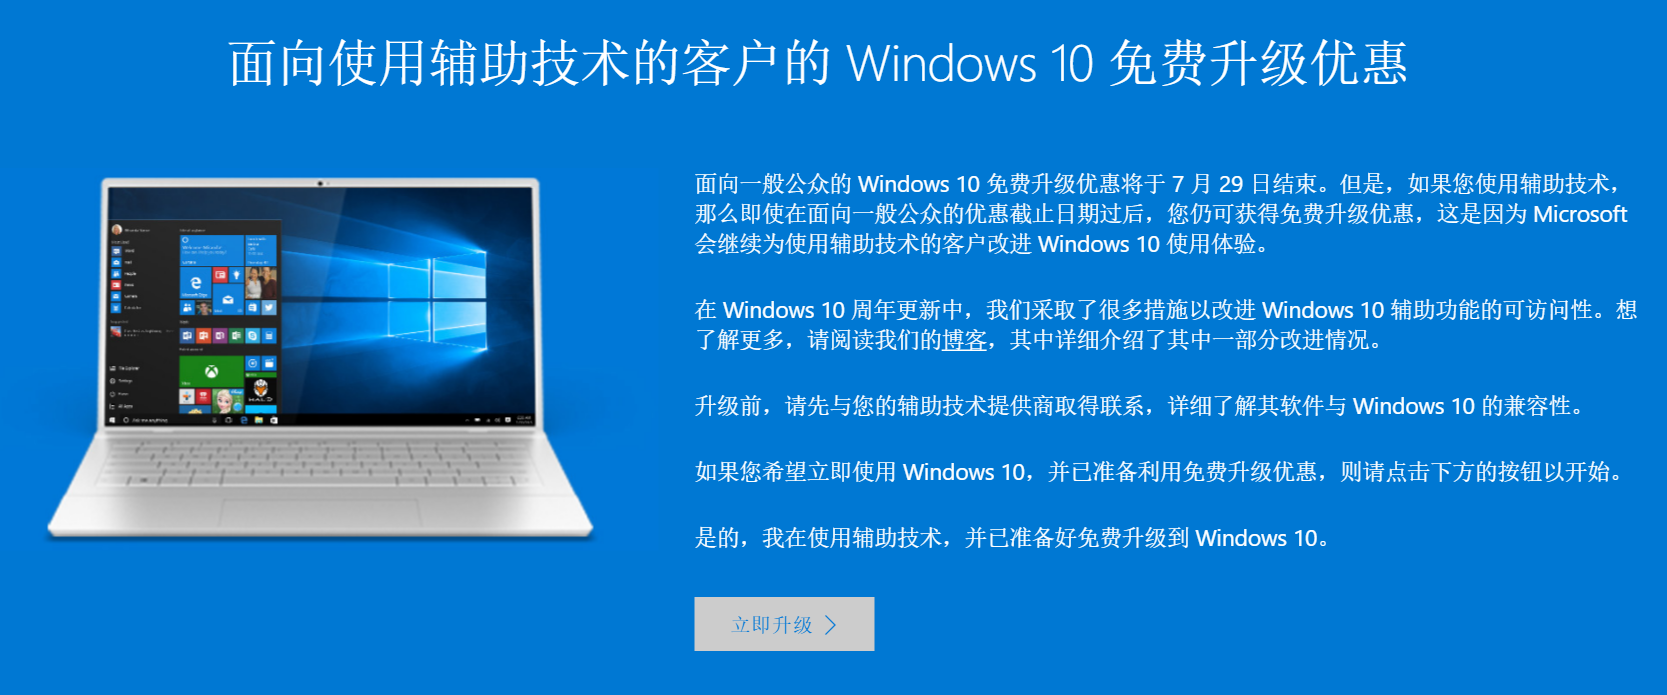 微软使用辅助技术为特殊人士免费升级Windows10系统